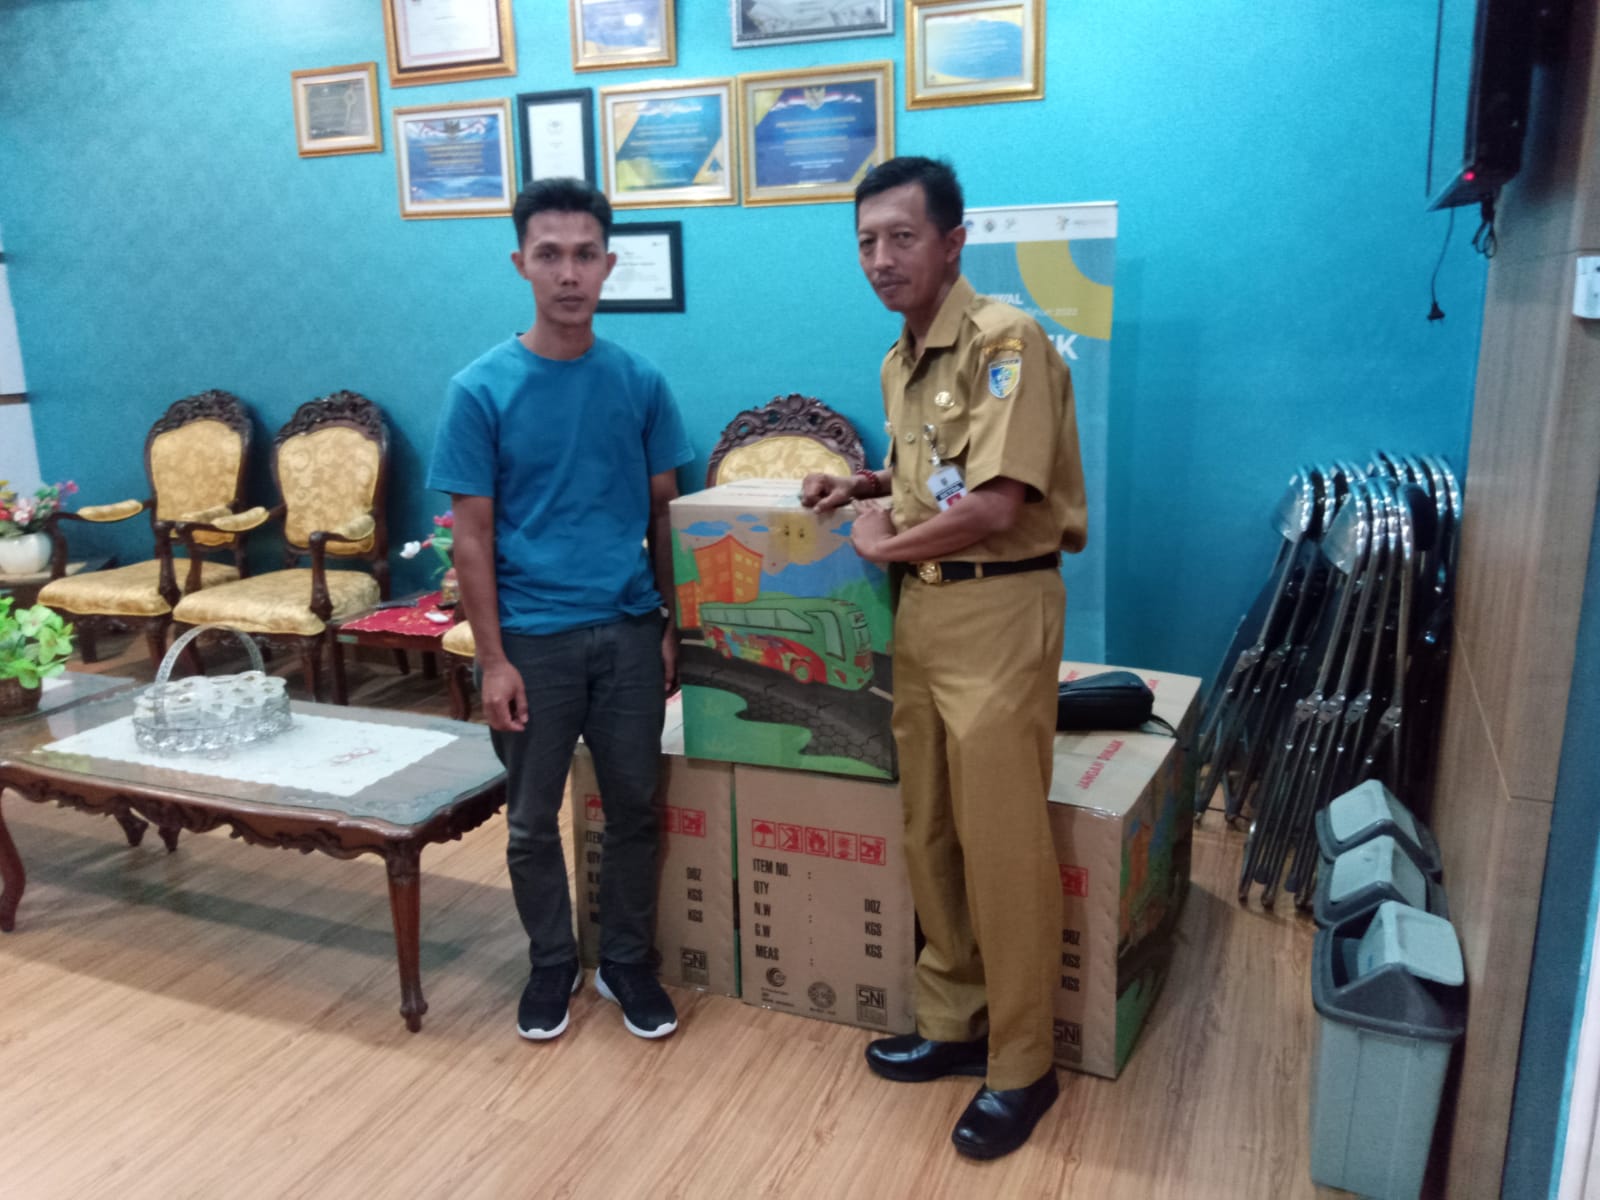 Sekda Demak, menerima 6 karton berisi 560 pcs mainan plastik ramah anak dari Fakhrudin, pemilik CV JSP (Jaya Setia Plastik).